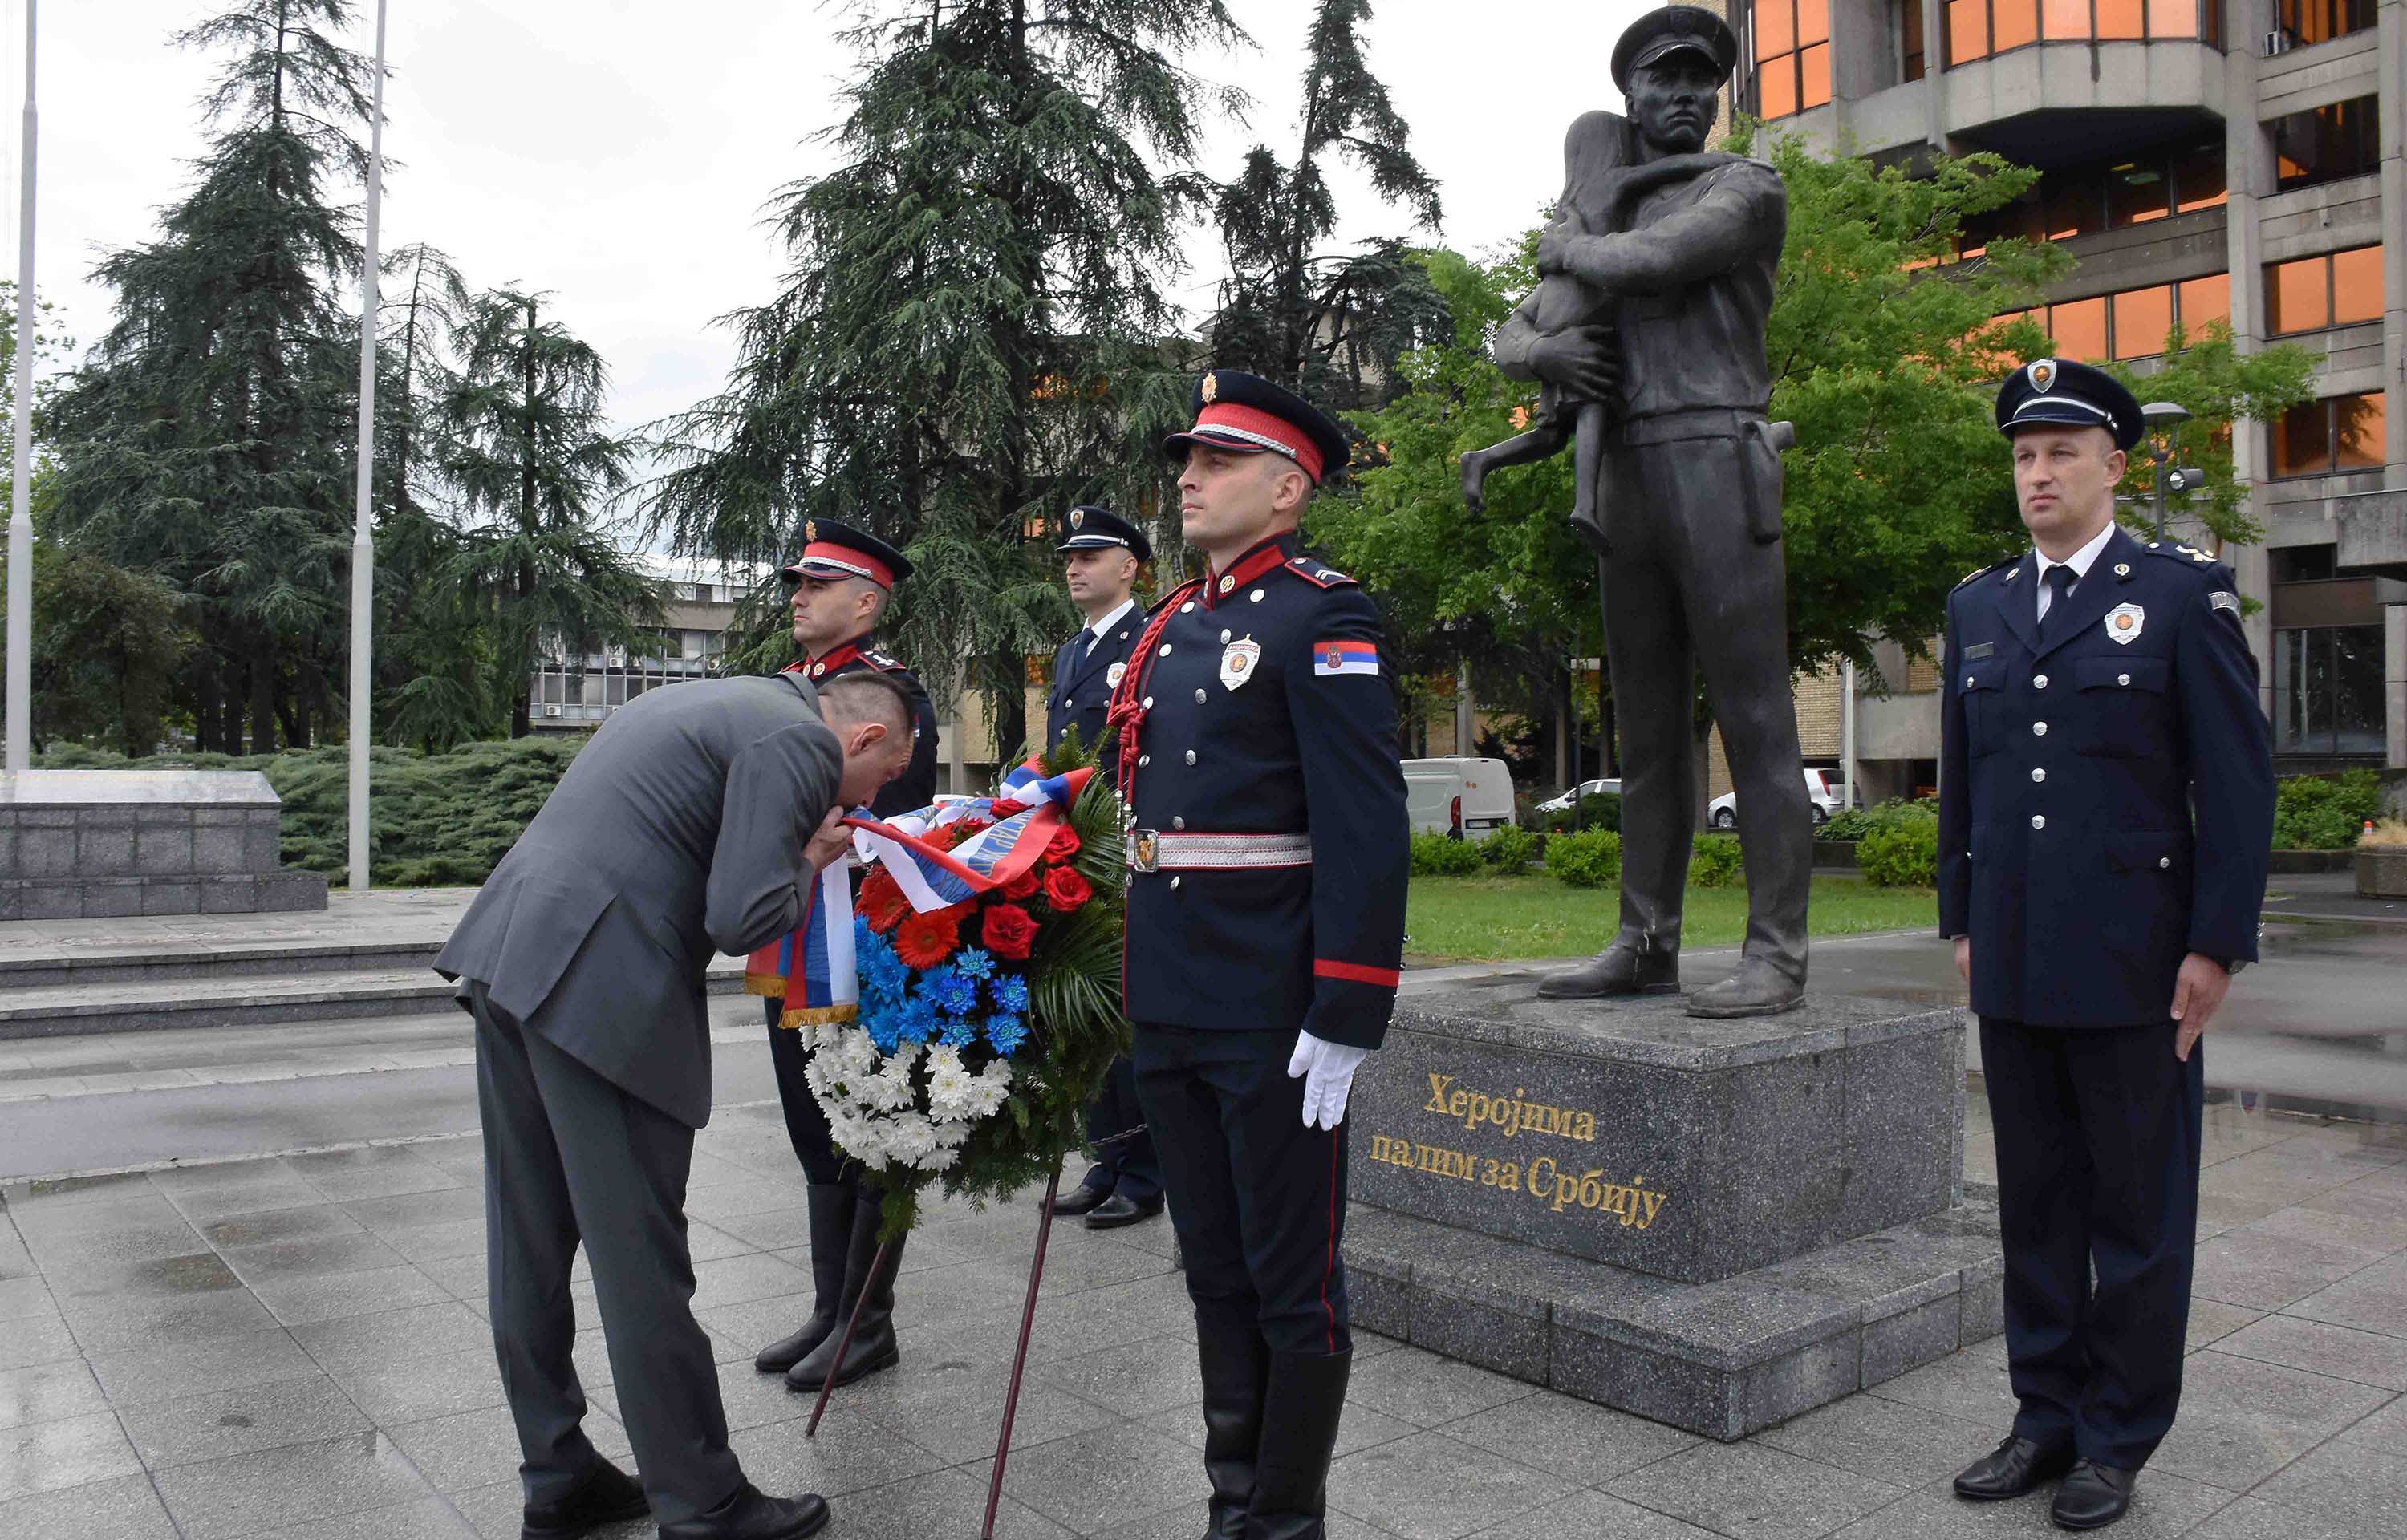 Ministar Vulin: Heroji koji su dali svoje živote braneći Srbiju neće biti zaboravlјeni